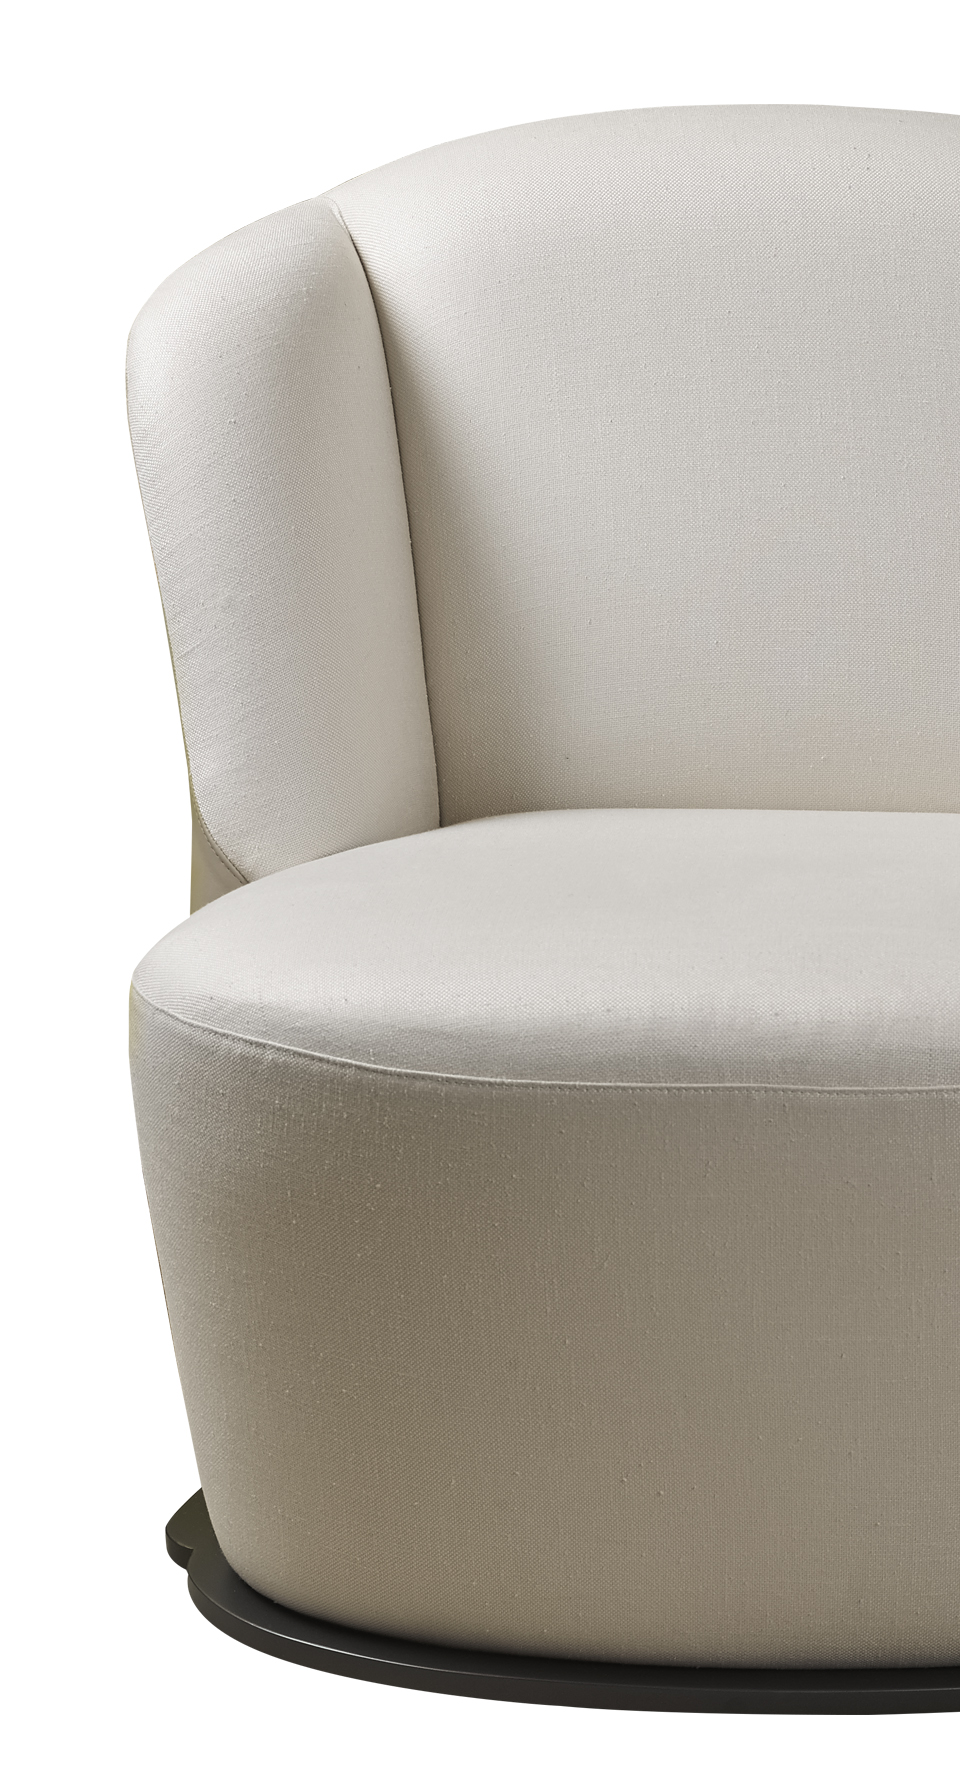 Détail de Rosaspina, fauteuil revêtu de tissu et de cuir, avec un piètement en métal. Ce meuble figure dans le catalogue Promemoria | Promemoria